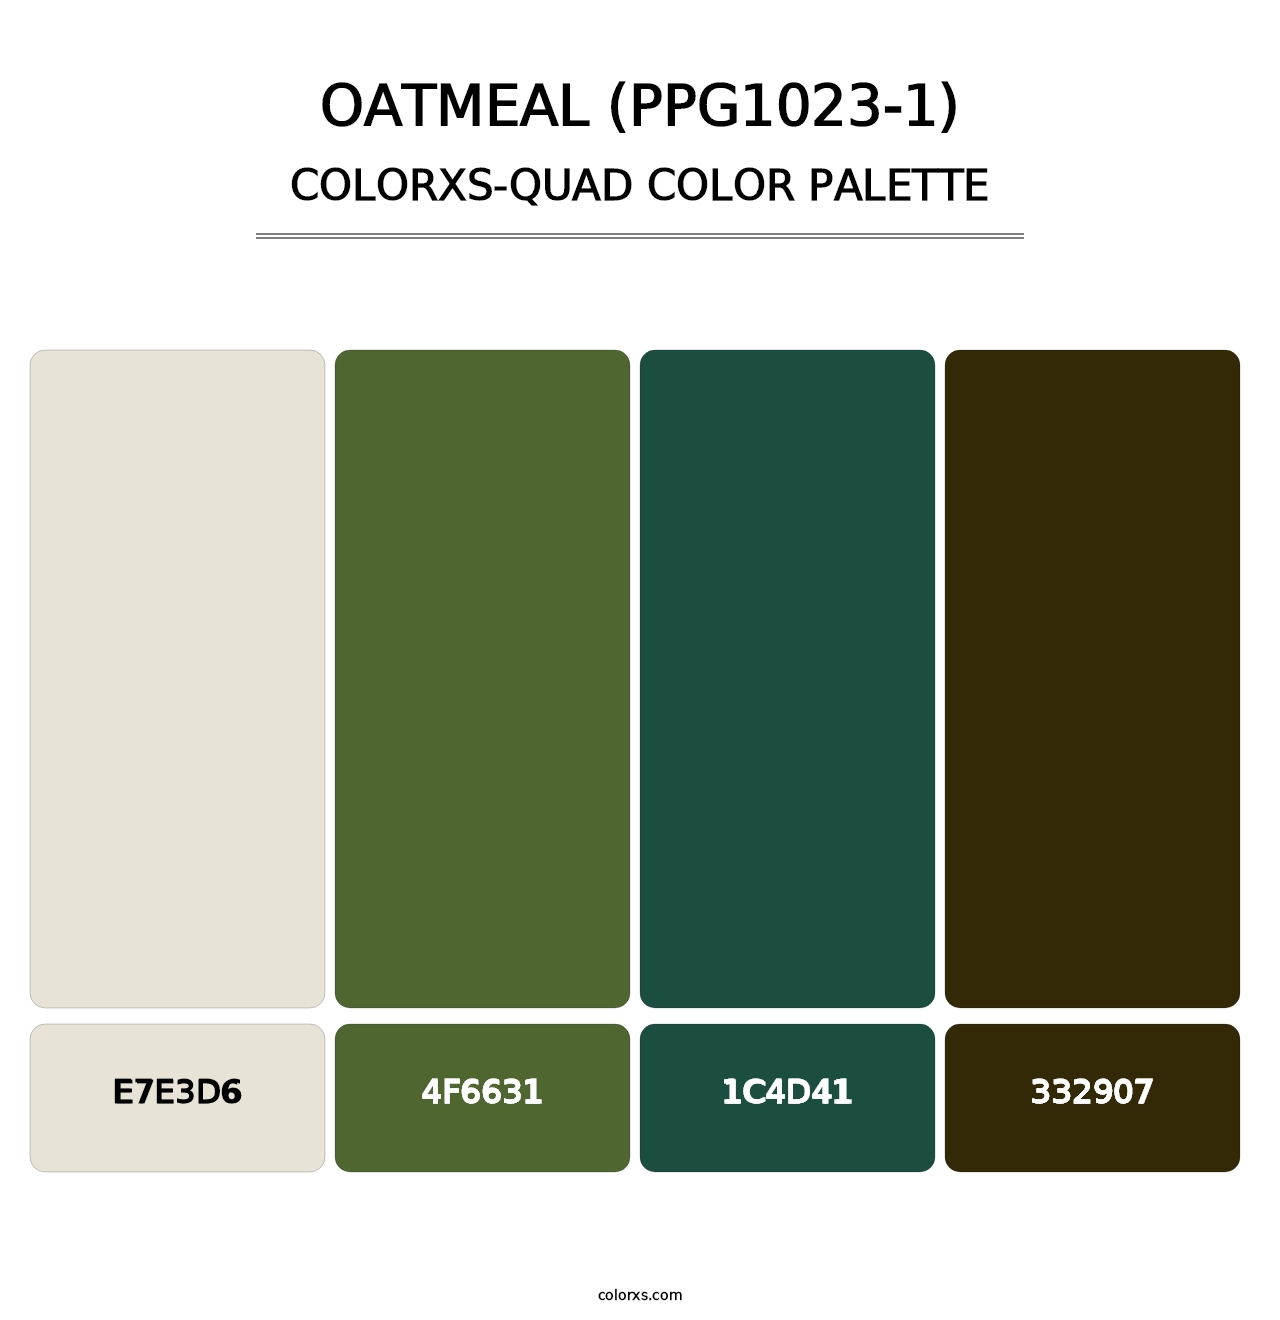 Oatmeal (PPG1023-1) - Colorxs Quad Palette